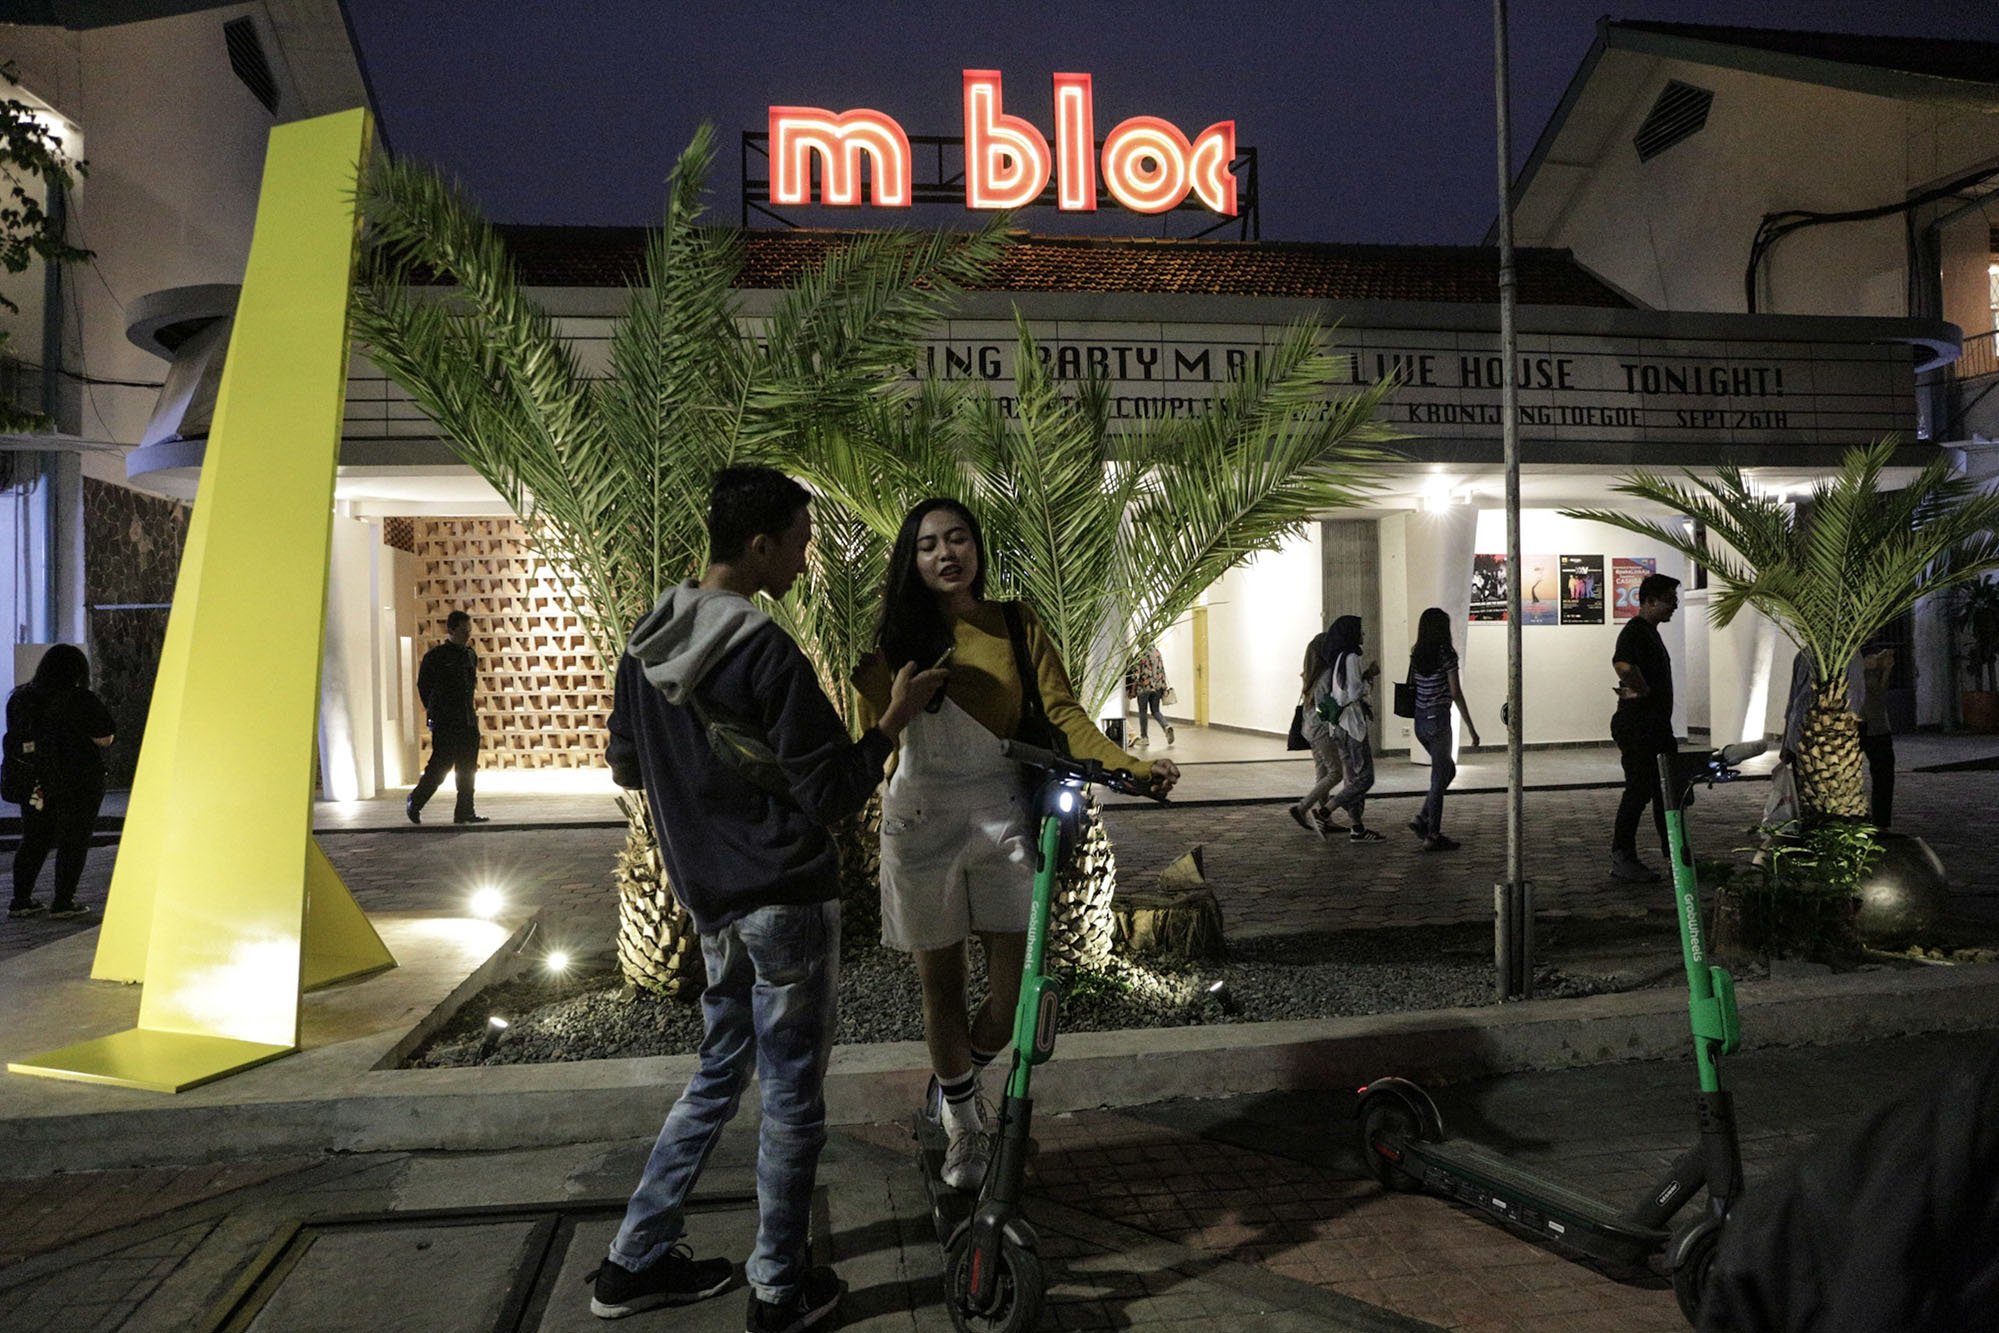 \r\nSuasana di M Bloc Space, Jakarta (21/11/2019). Letak M Bloc Space yang berada di antara Stasiun MRT ASEAN dan Blok M, tak jauh dari M Bloc Space pun juga ada Halte Busway Blok M.